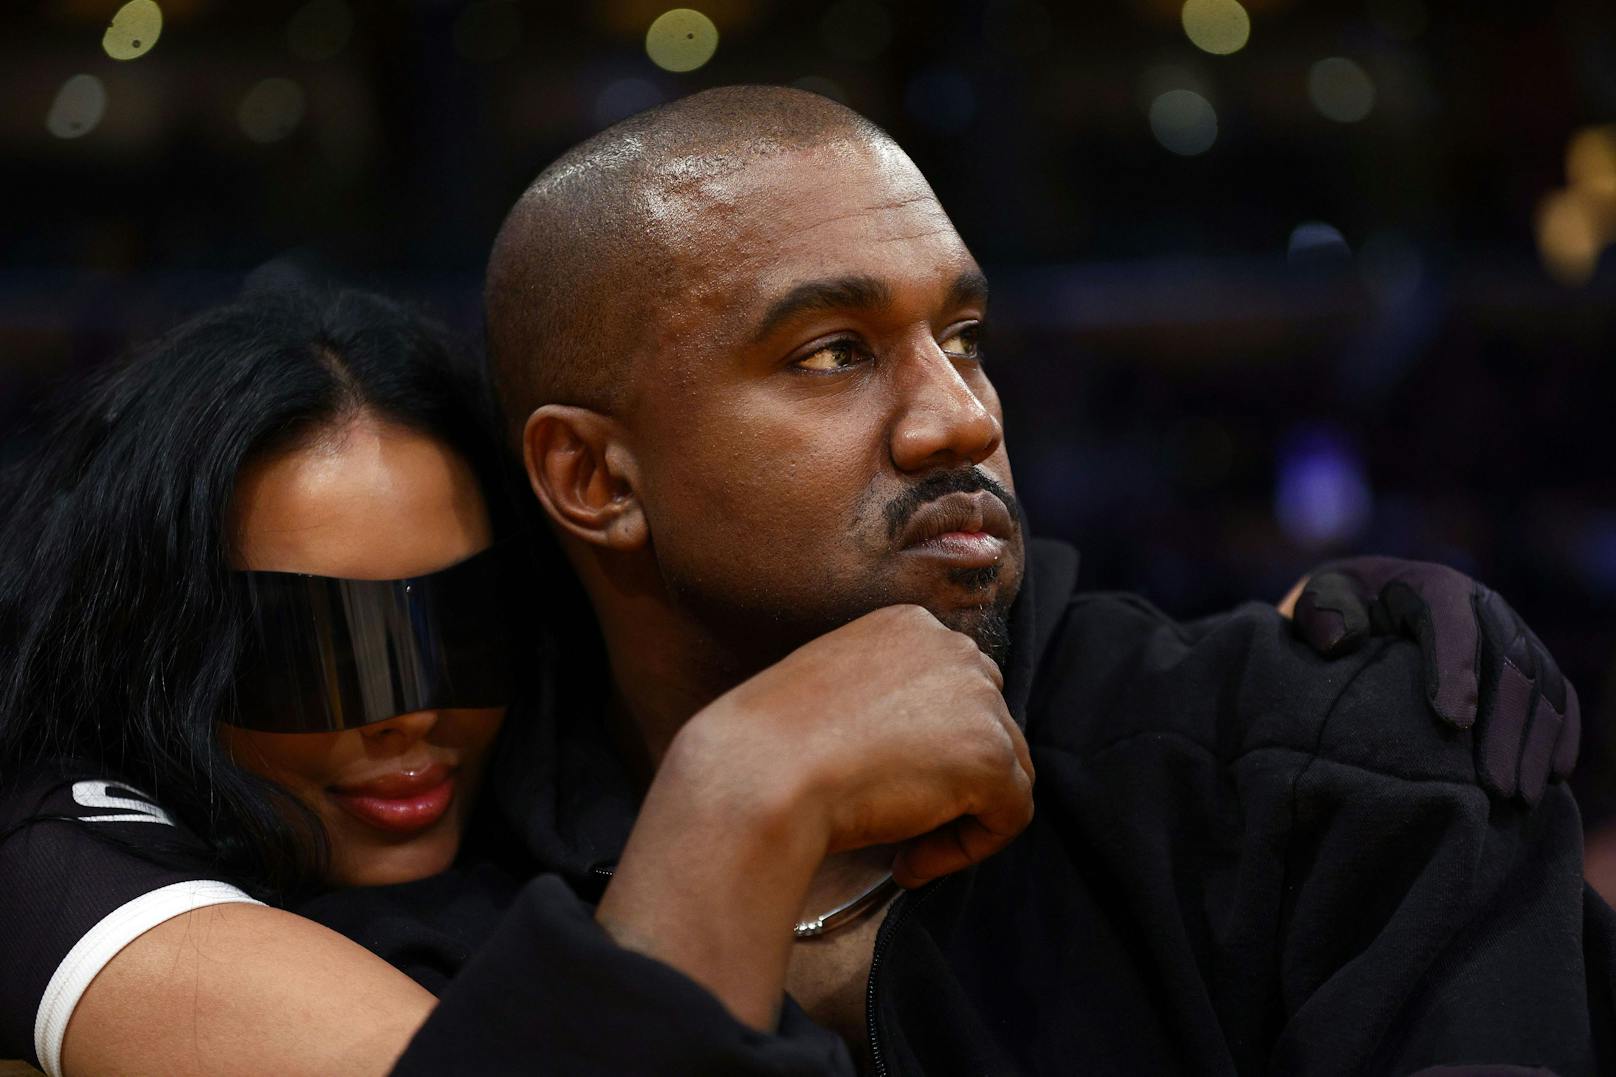 Sportartikel-Riese Adidas sauer auf Rapper Kanye West